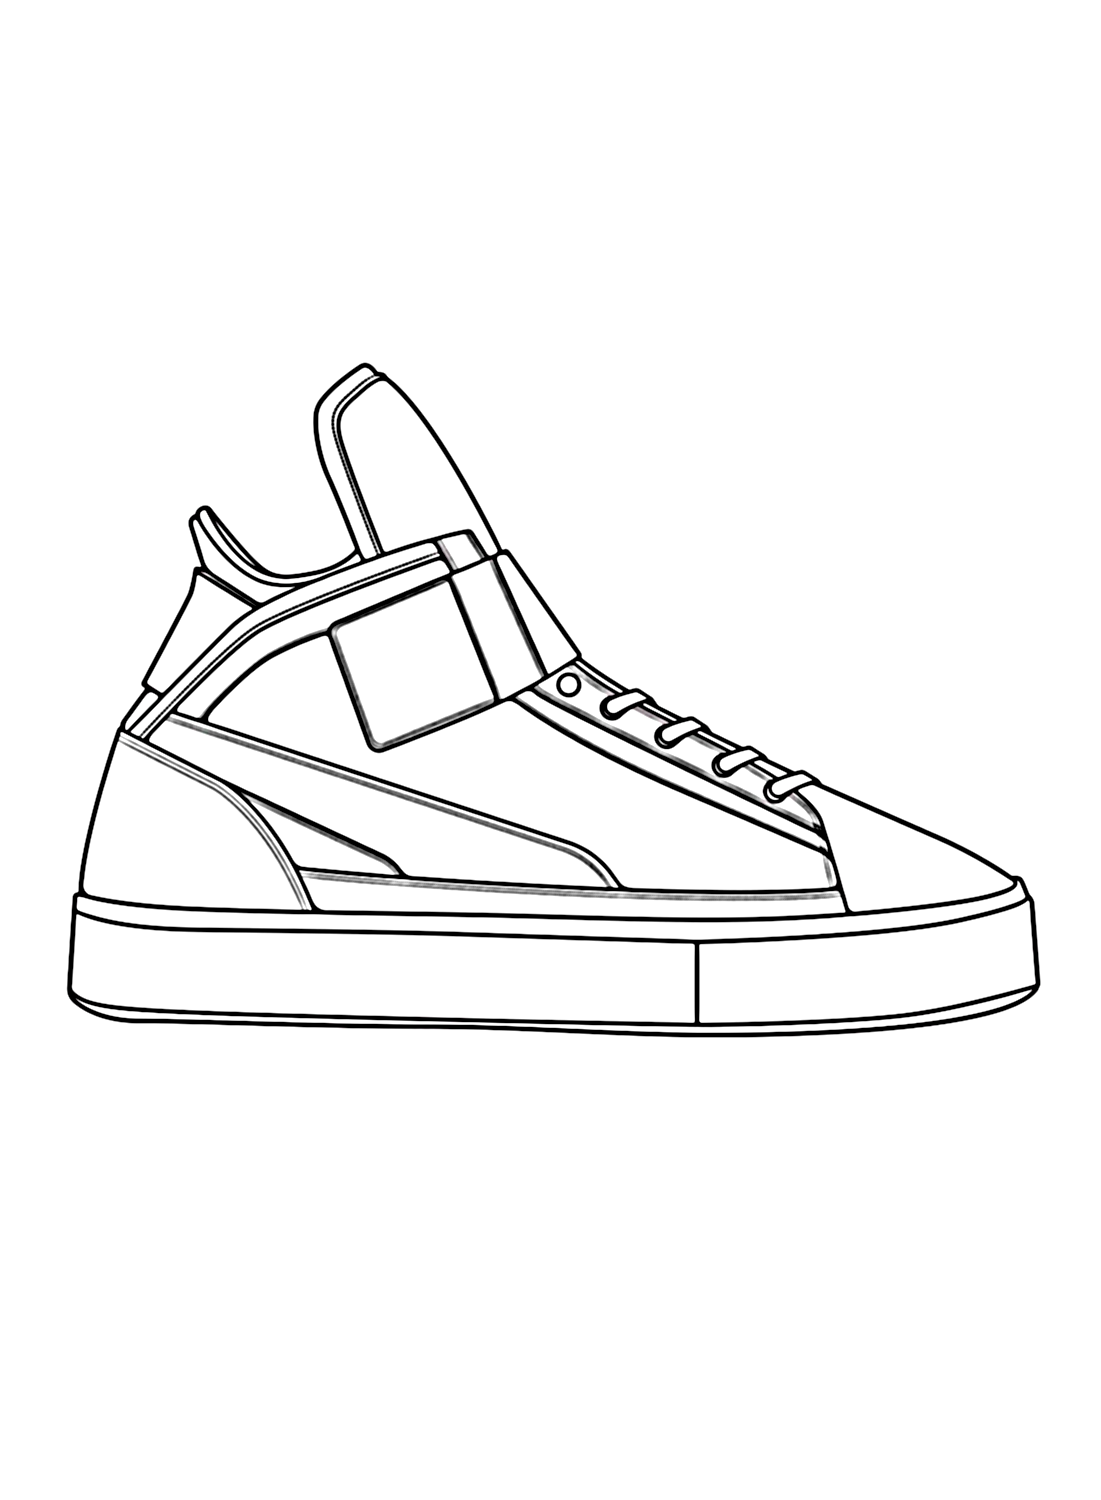 Sneaker-Malvorlage von Shoe